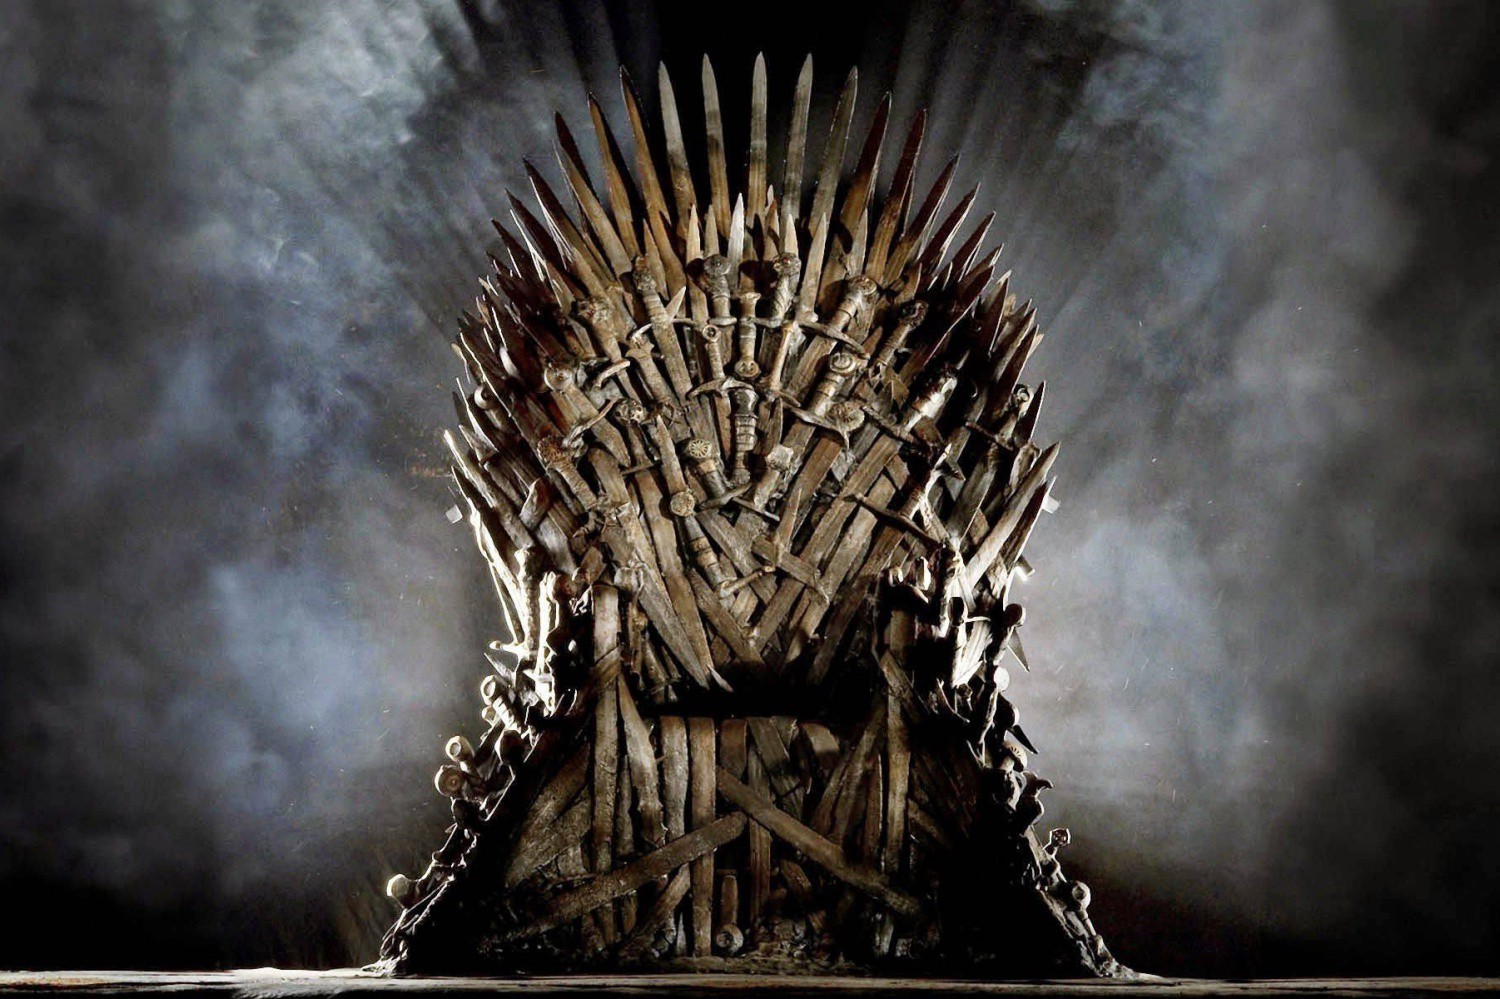 HBO prepara otra precuela de “Game of Thrones” tras el éxito de “House of the Dragon”